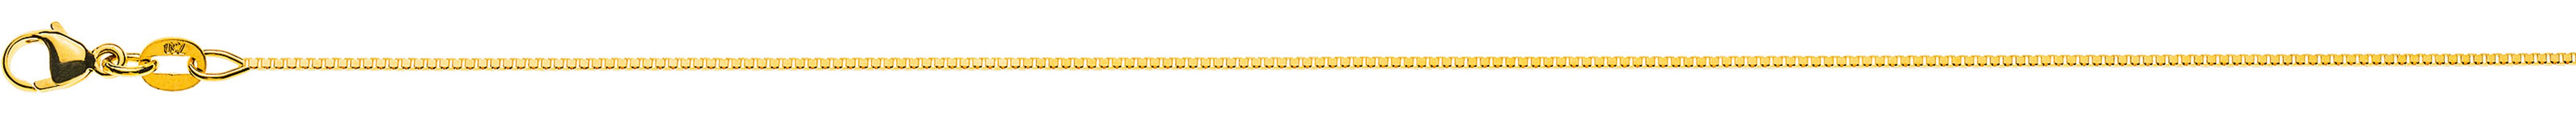 AURONOS Prestige Halskette Gelbgold 18K Venezianerkette diamantiert 60cm 0.8mm